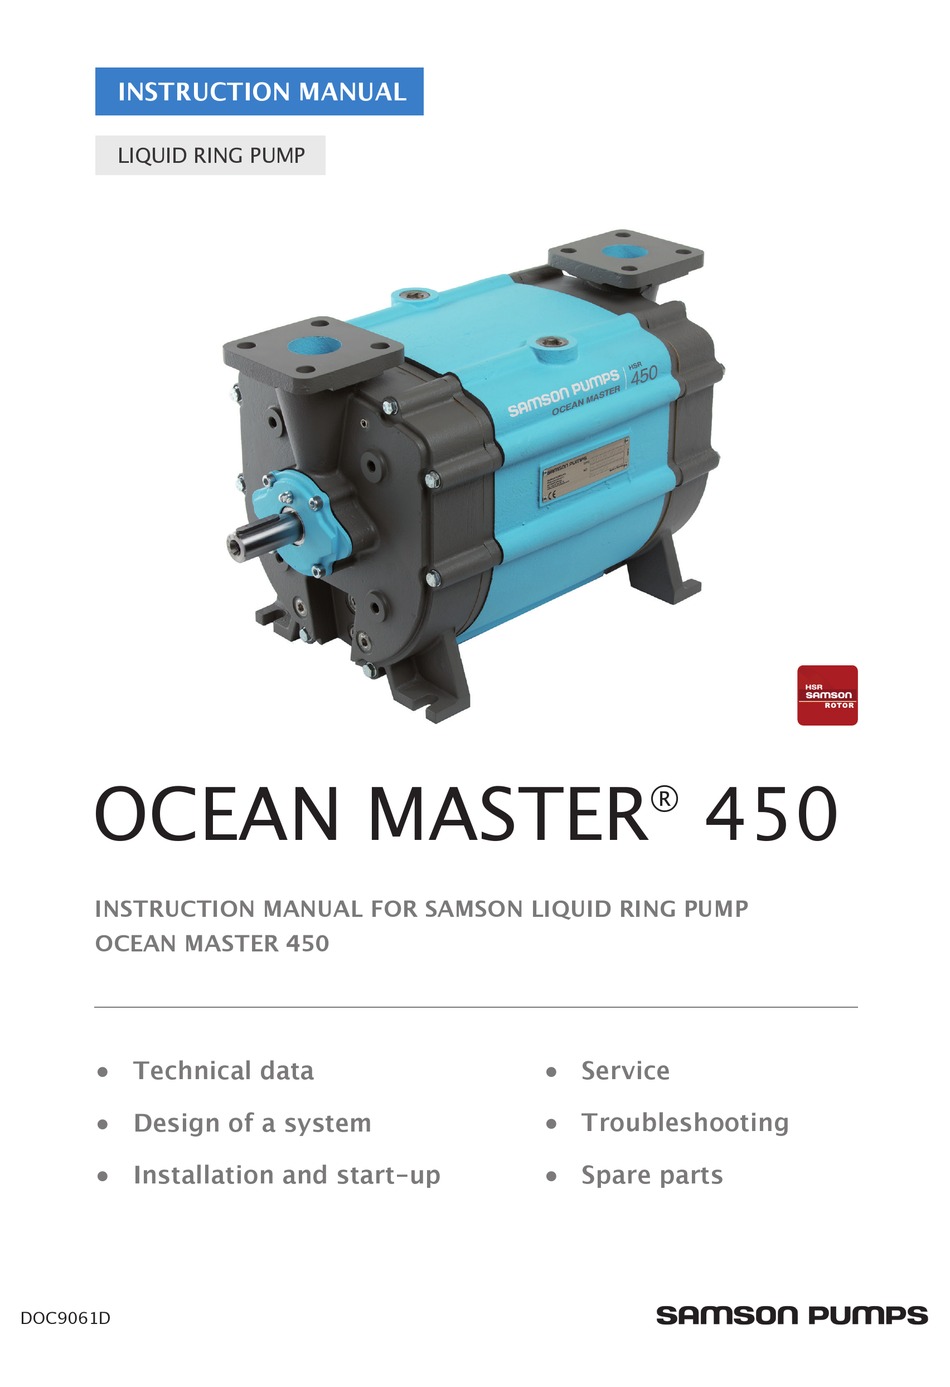 SAMSON OCEAN MASTER 450 INSTRUCTION MANUAL Pdf |